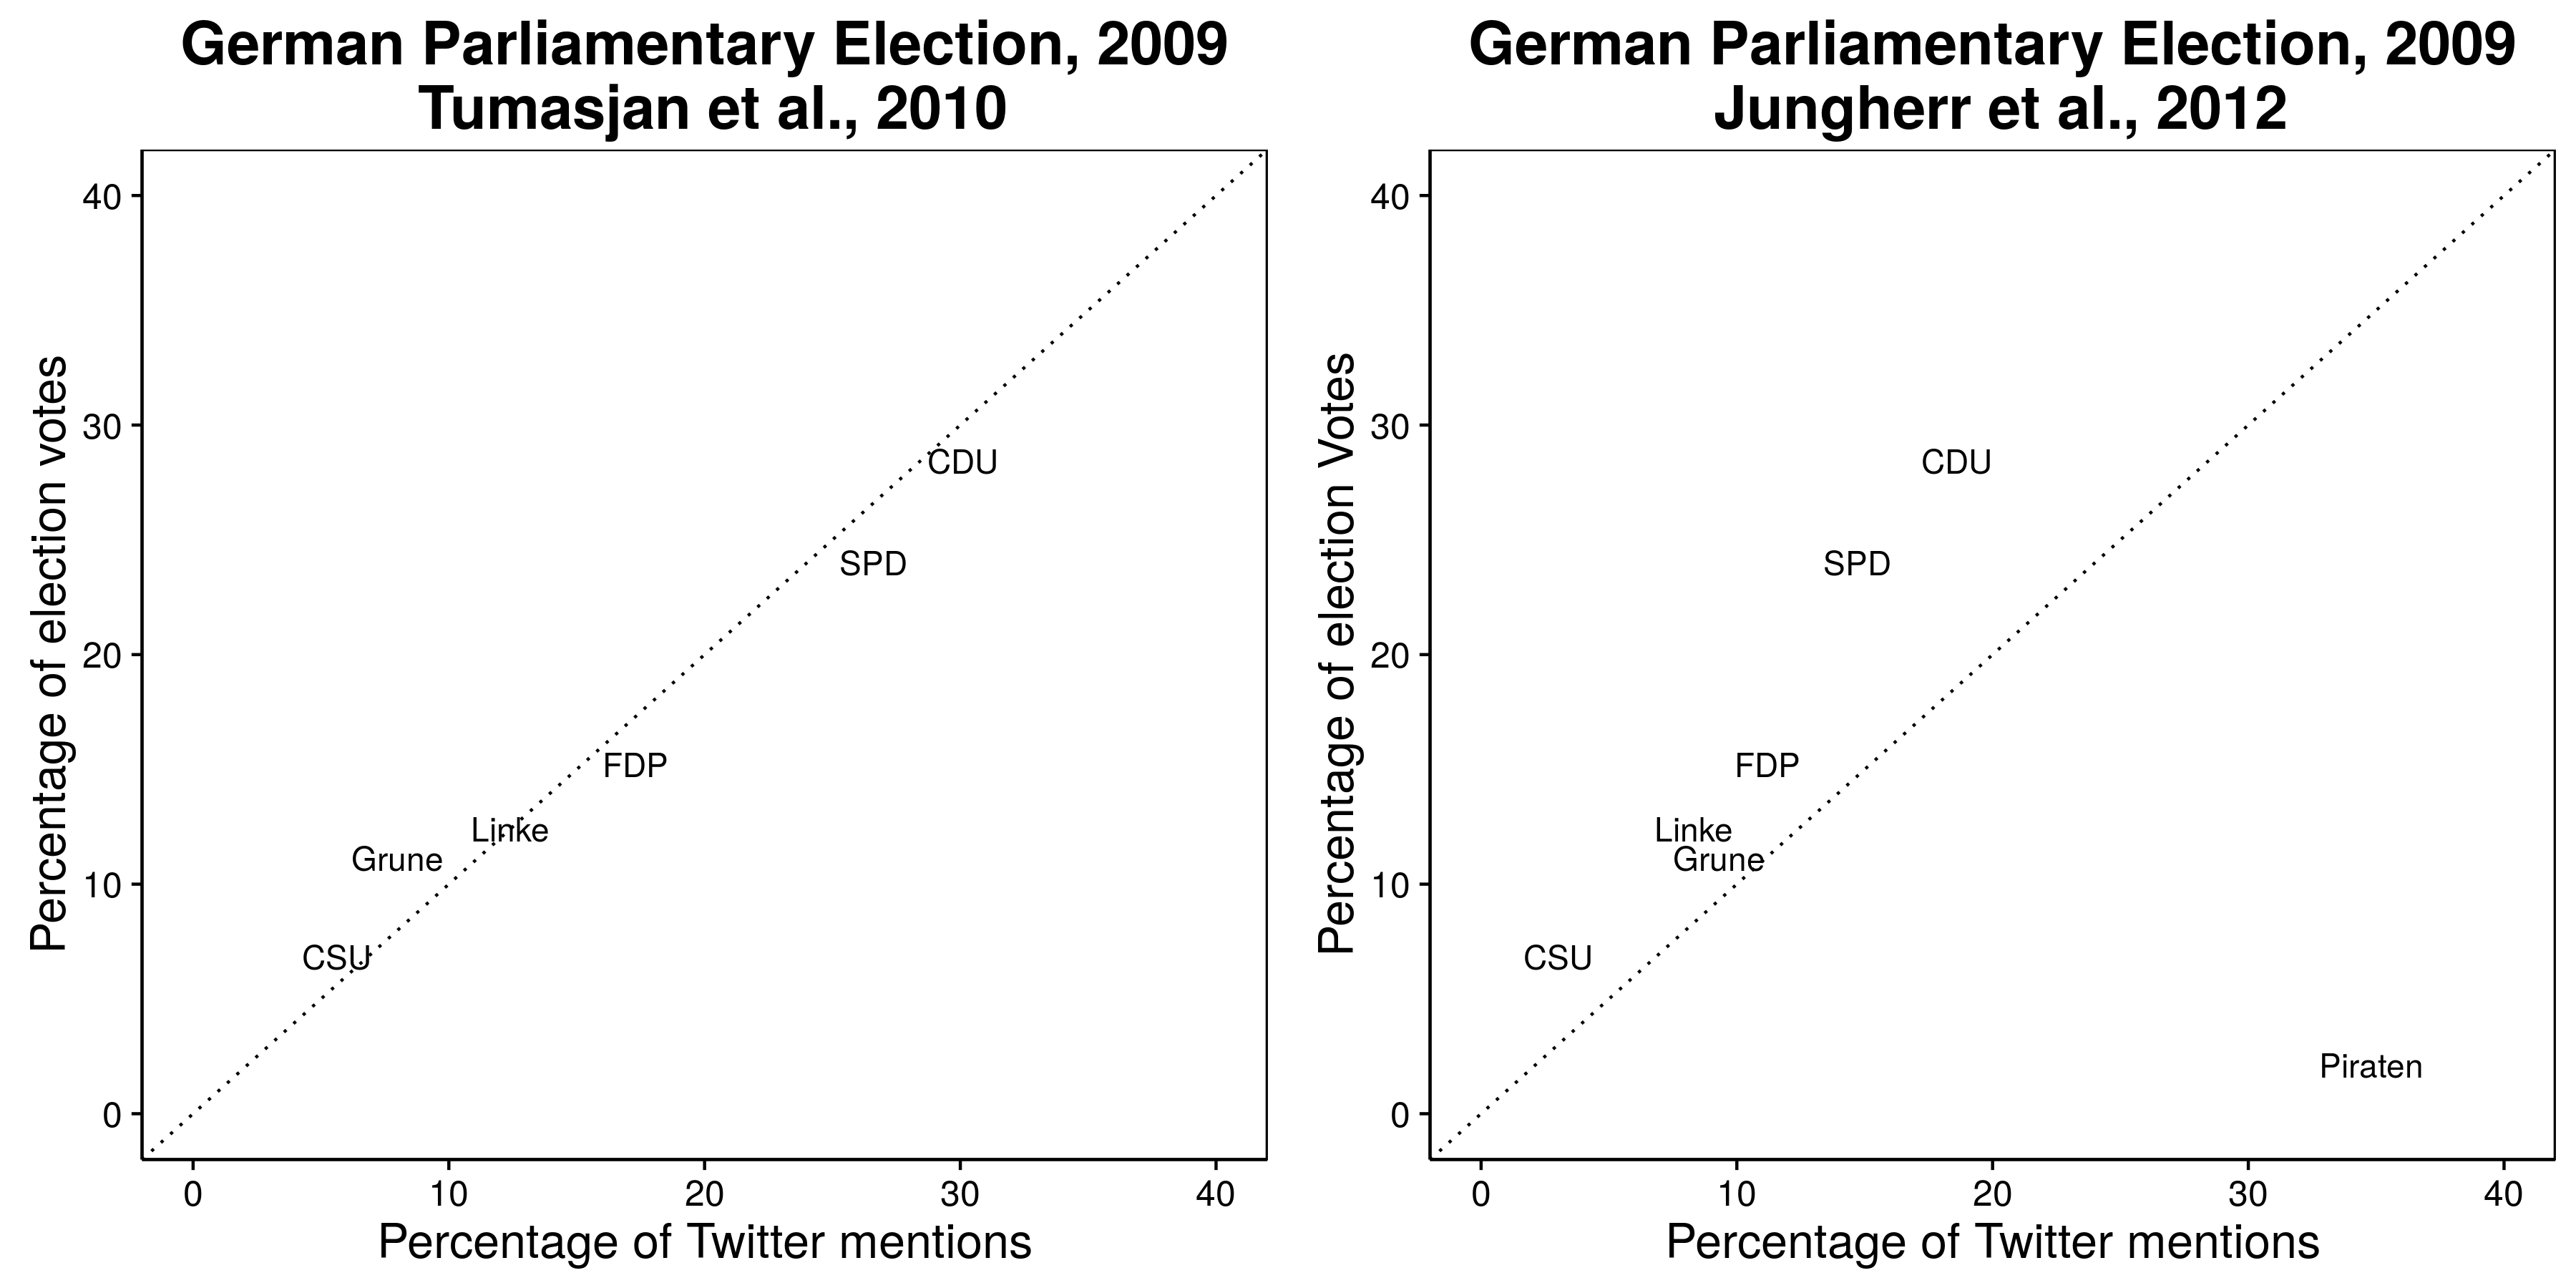 Zdi se, da napovedi o rezultatih nemških volitev leta 2009 (Tumasjan et al., 2010) kažejo na napovedi Tviterja, vendar to izključuje zabavo z največ omenjenimi: Pirate Party (Jungherr, Jürgens in Schoen 2012). Glej Tumasjan et al. (2012) za argument za izključitev Piratske stranke. Prilagojeno od Tumasjan et al. (2010), tabela 4 in Jungherr, Jürgens in Schoen (2012), tabela 2.